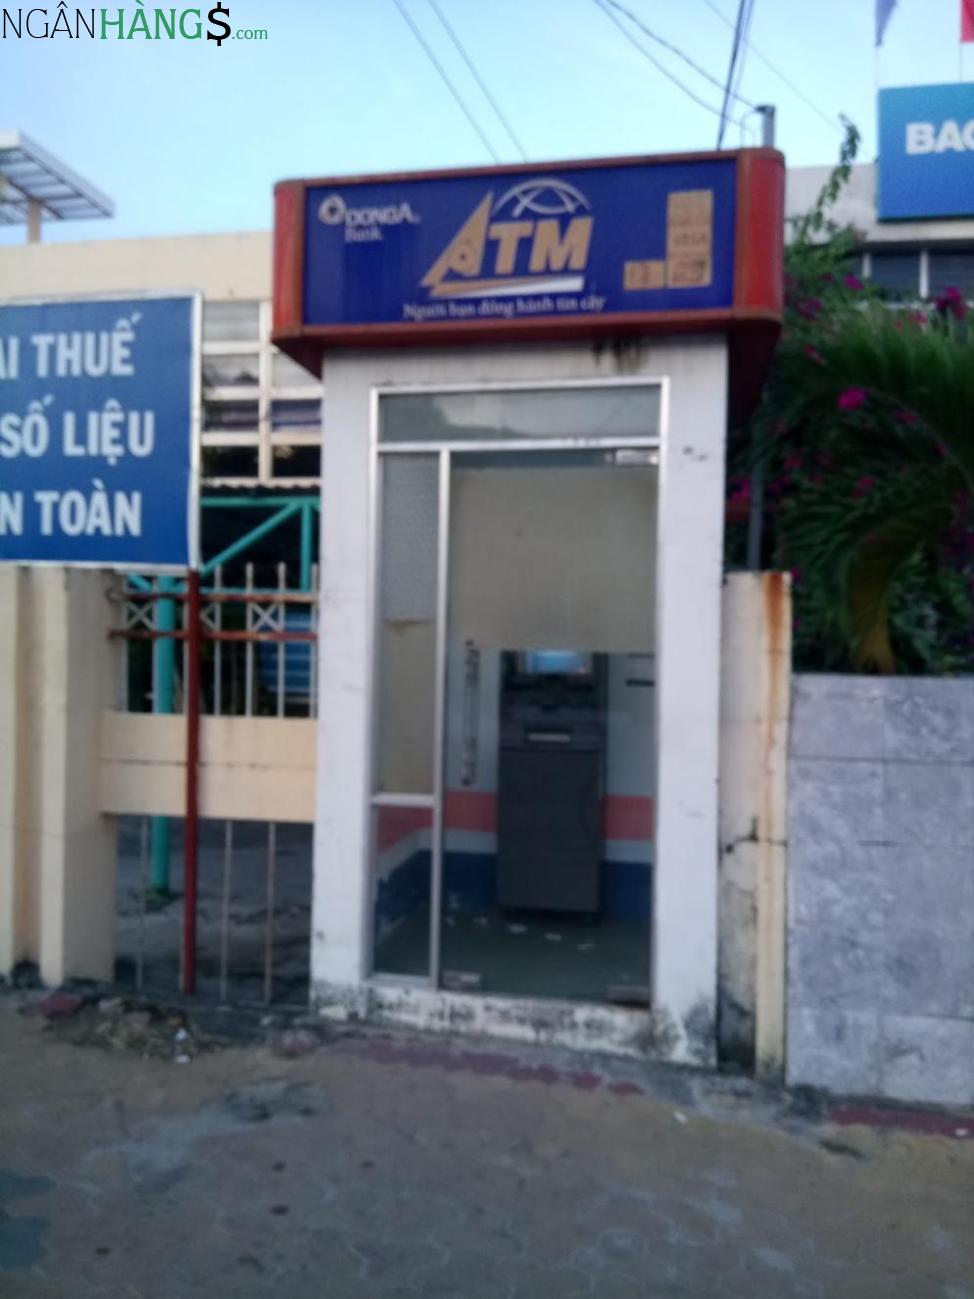 Ảnh Cây ATM ngân hàng Đông Á DongABank Huyện Ủy Huyện Phú Quốc 1